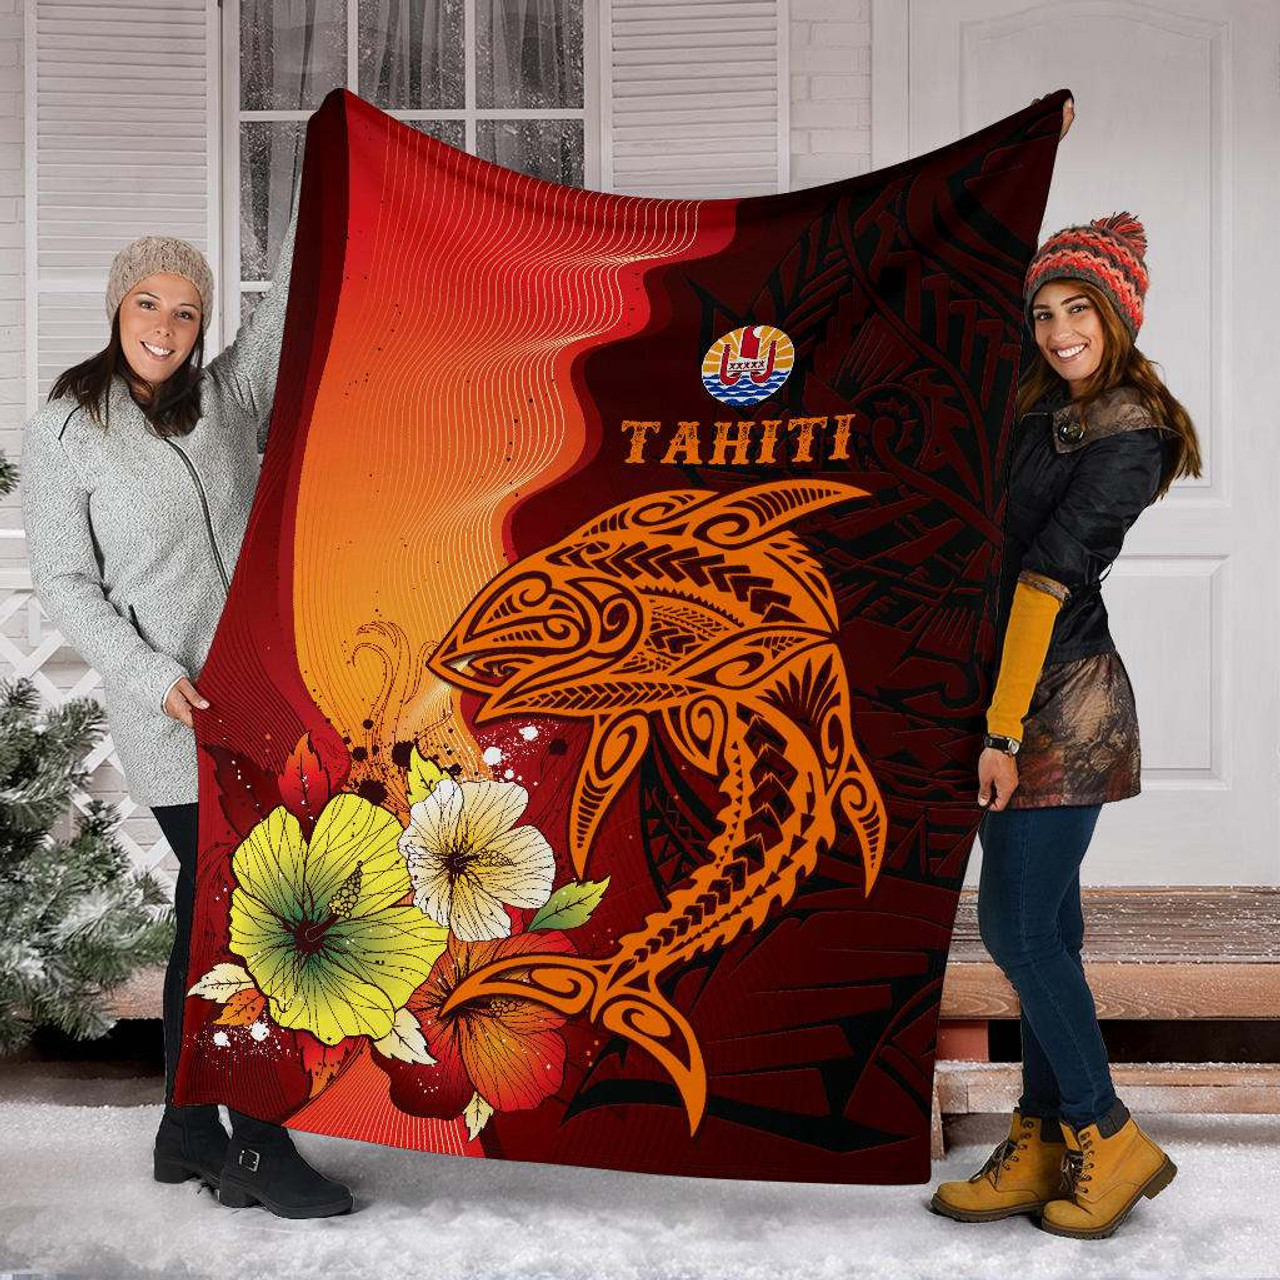 Tahiti Premium Blankets - Tribal Tuna Fish 6